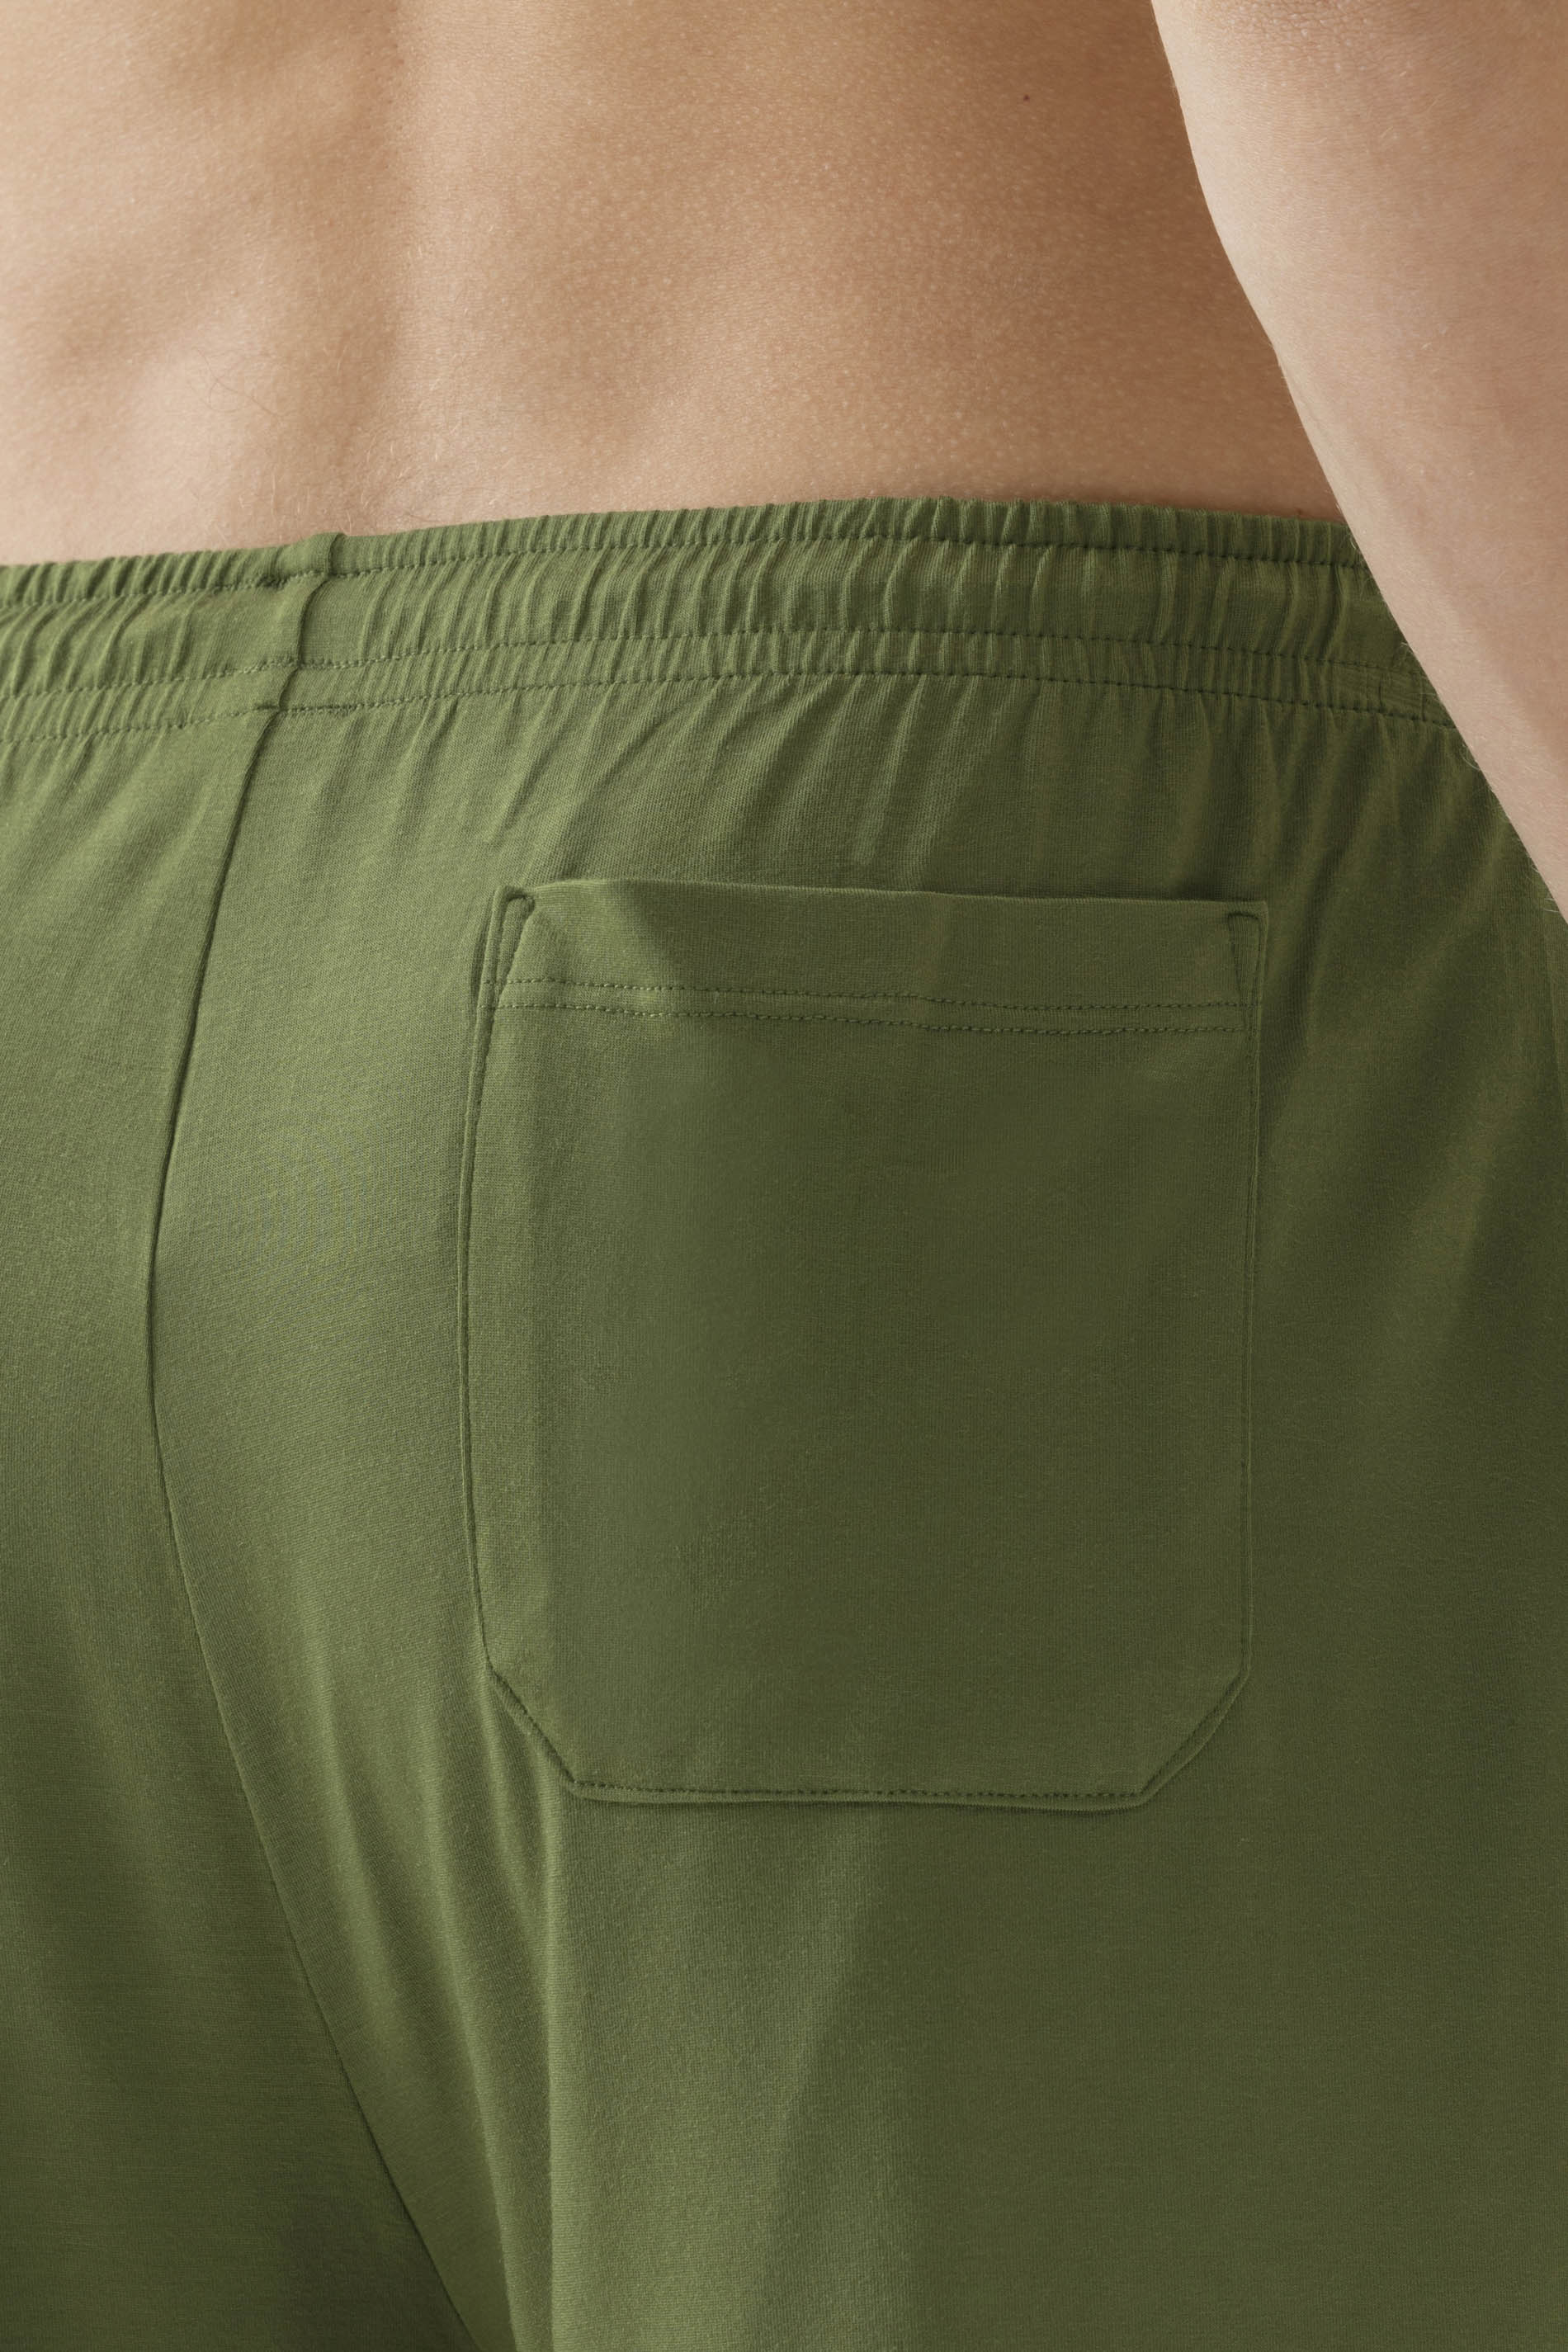 Short pants Serie Jefferson Modal Detail View 02 | mey®